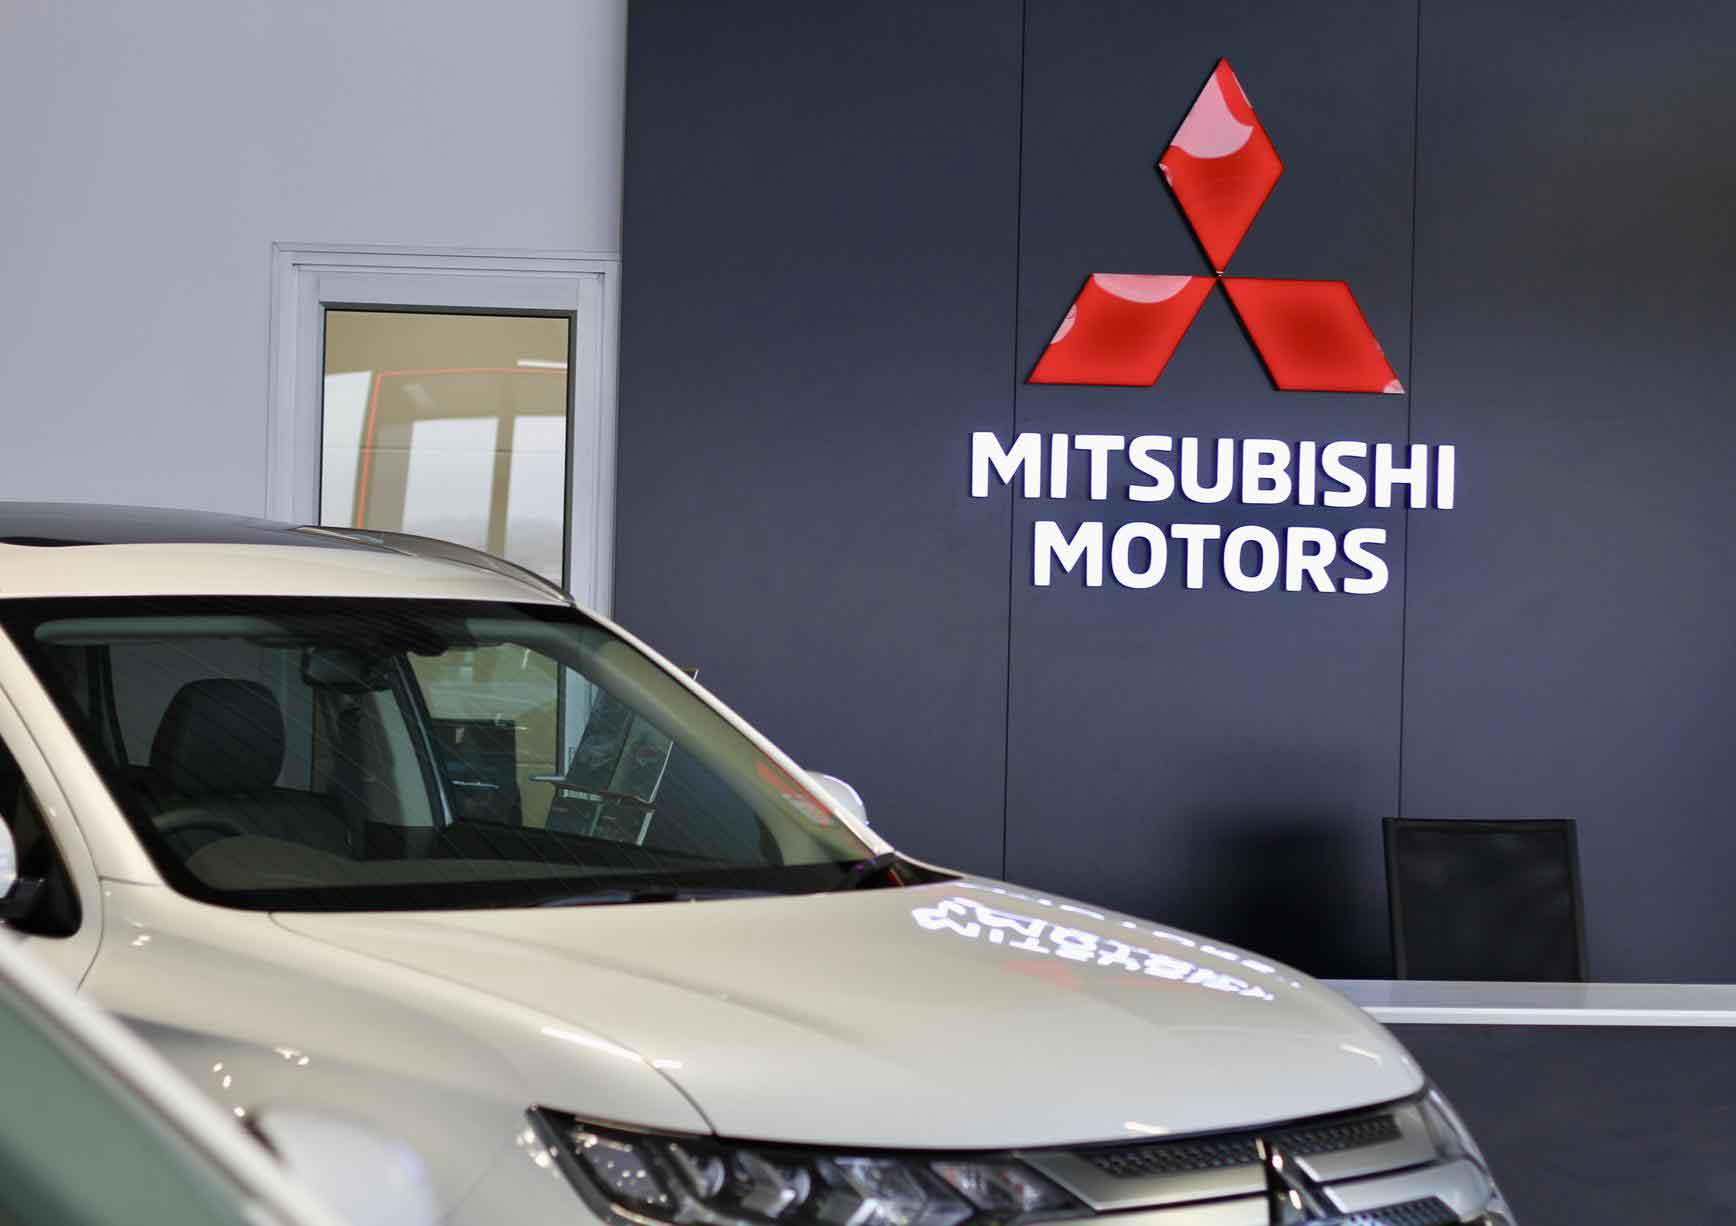 Mitsubishi Motors Zambezi dealer image0